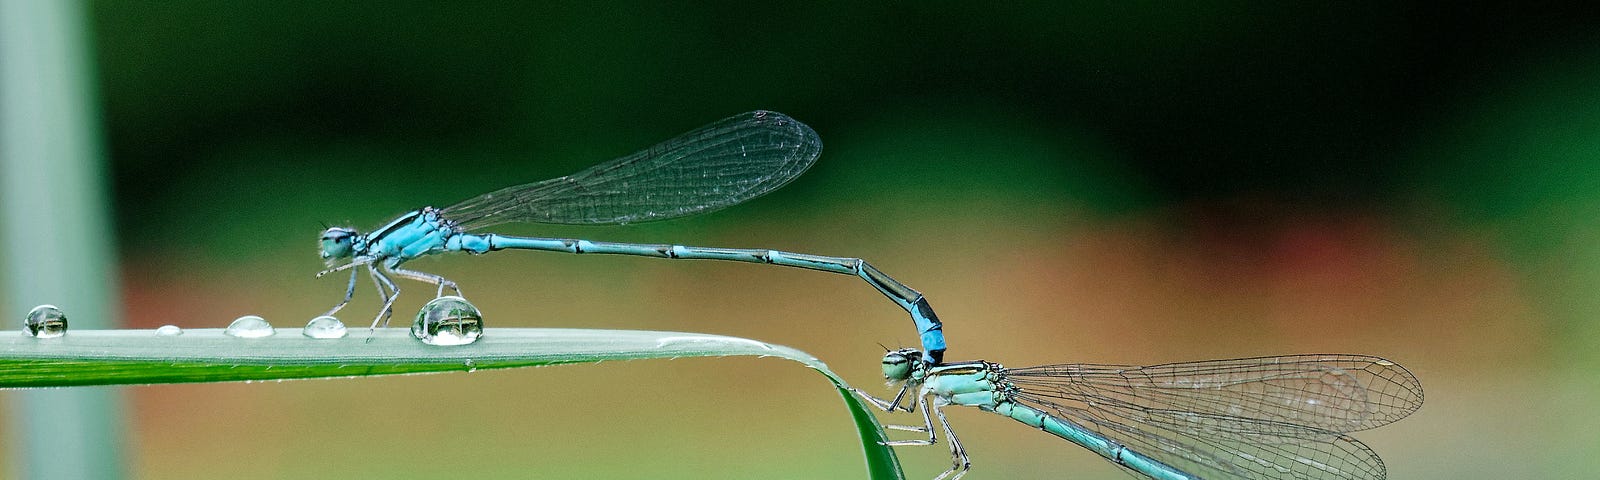 2 Blue Dragonflies on a leaf.